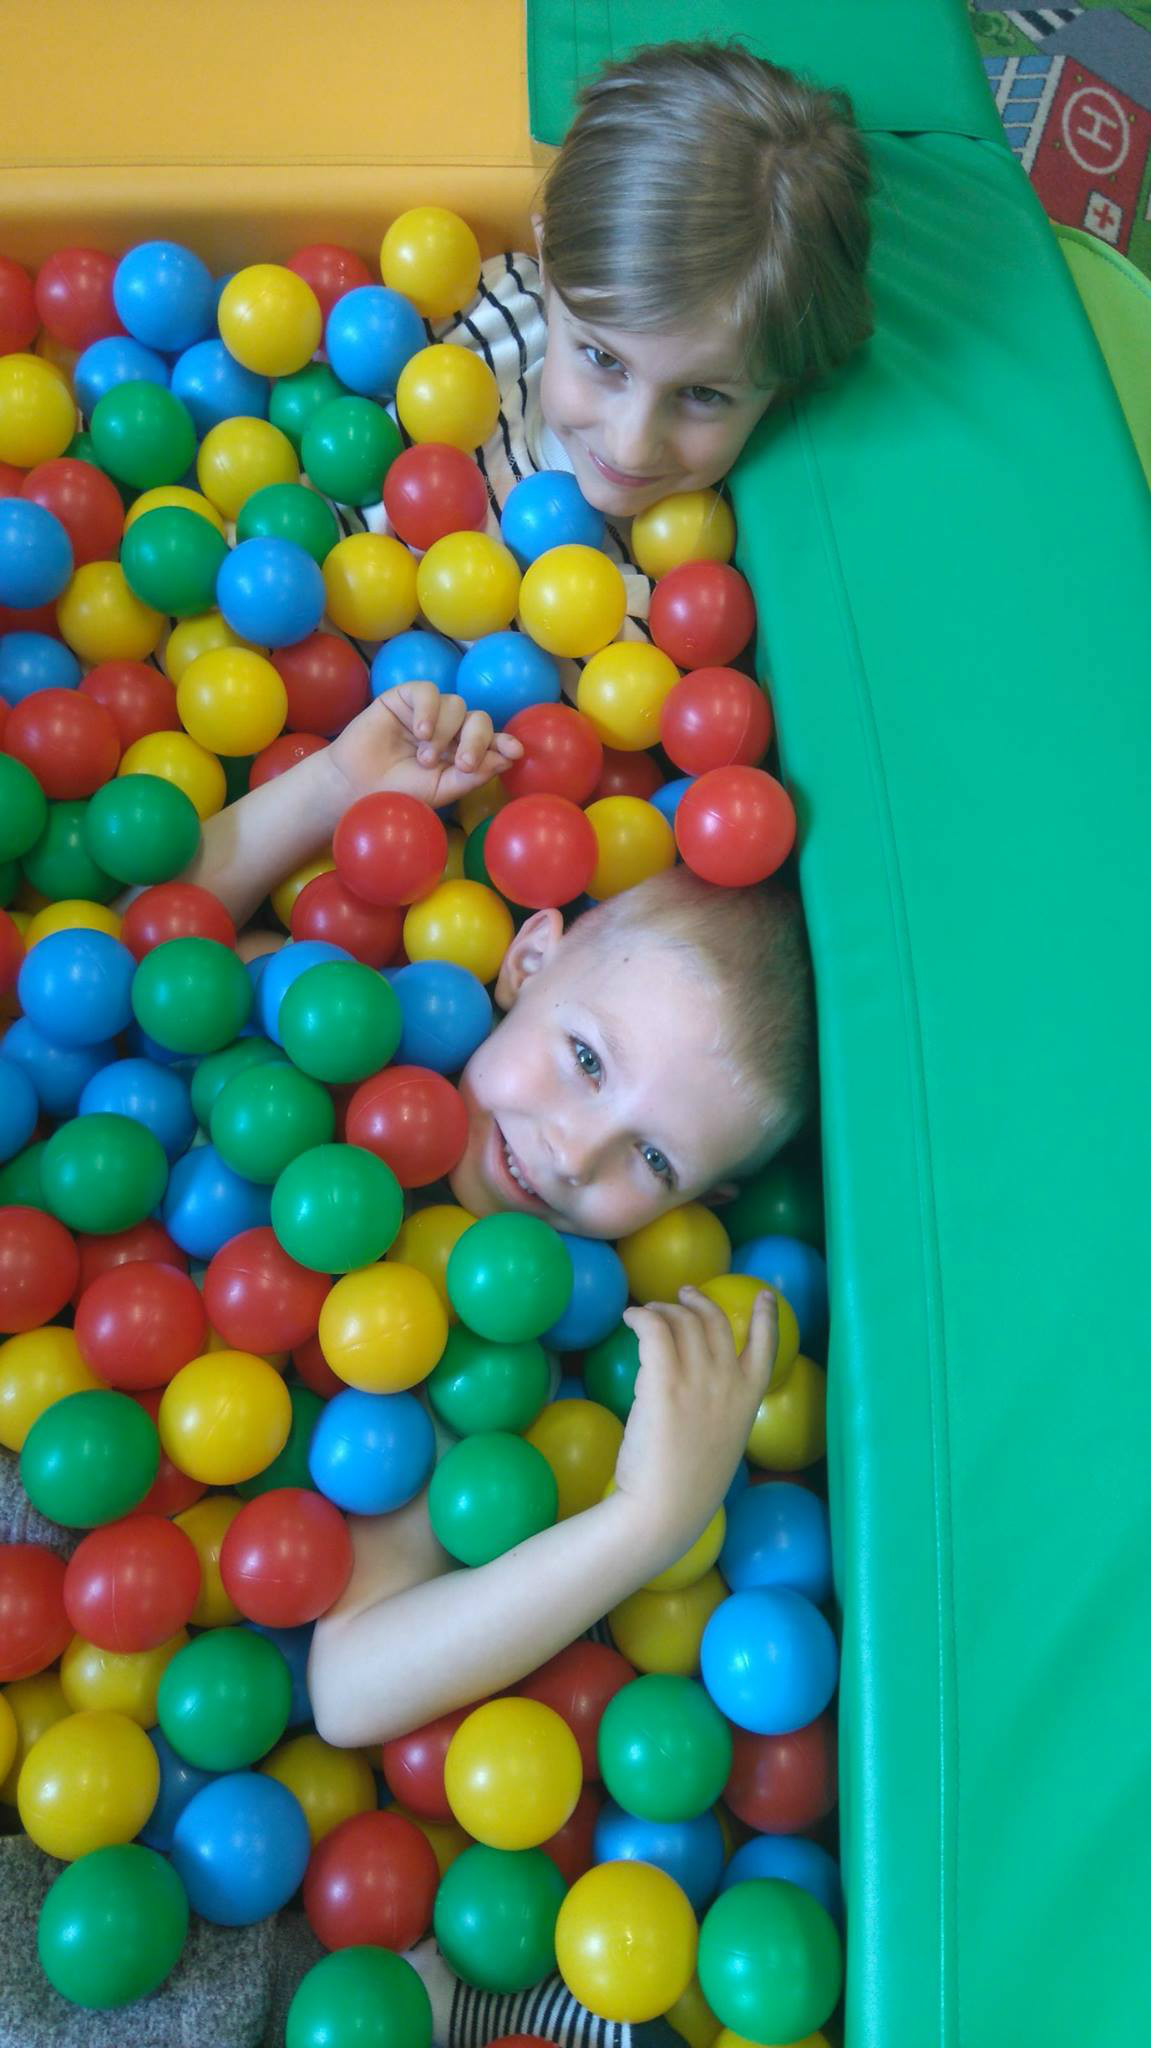 W basenie z kolorowymi piłeczkami bawi się chłopczyk z dziewczynką. 